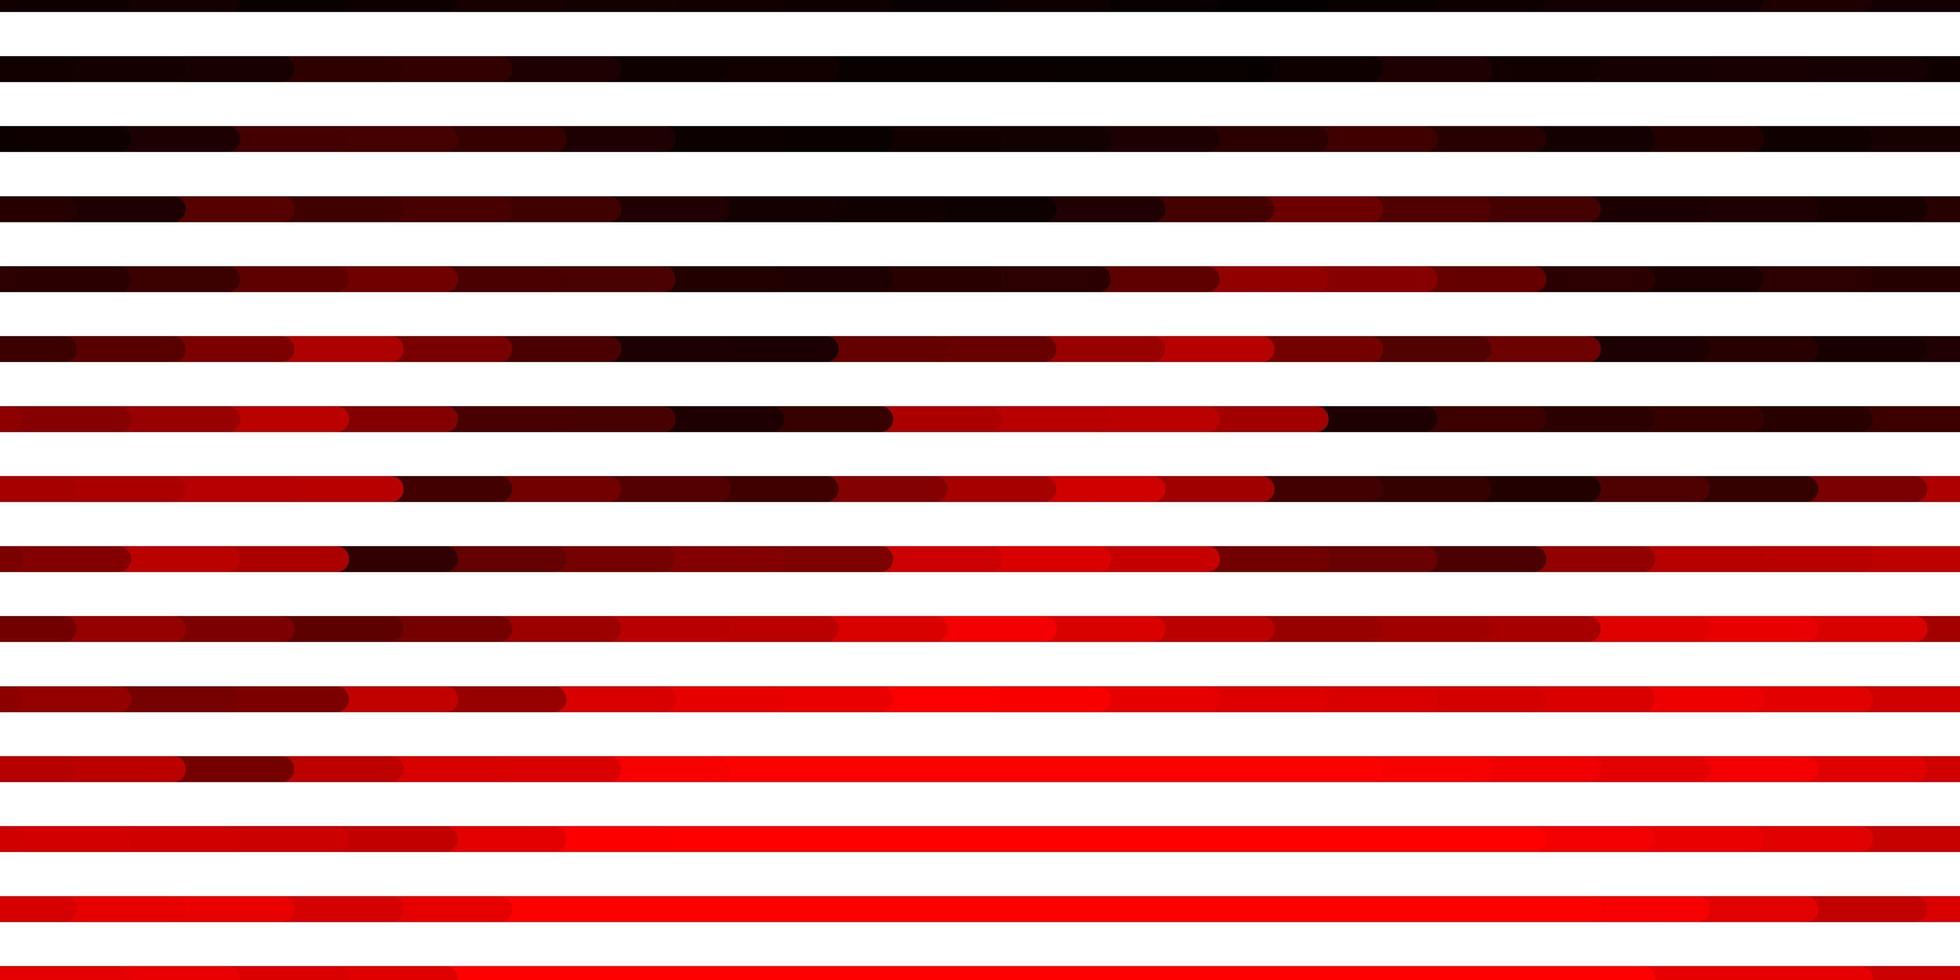 motif vectoriel rouge foncé avec des lignes. illustration dégradée avec des lignes droites dans un style abstrait. modèle pour les annonces, publicités.